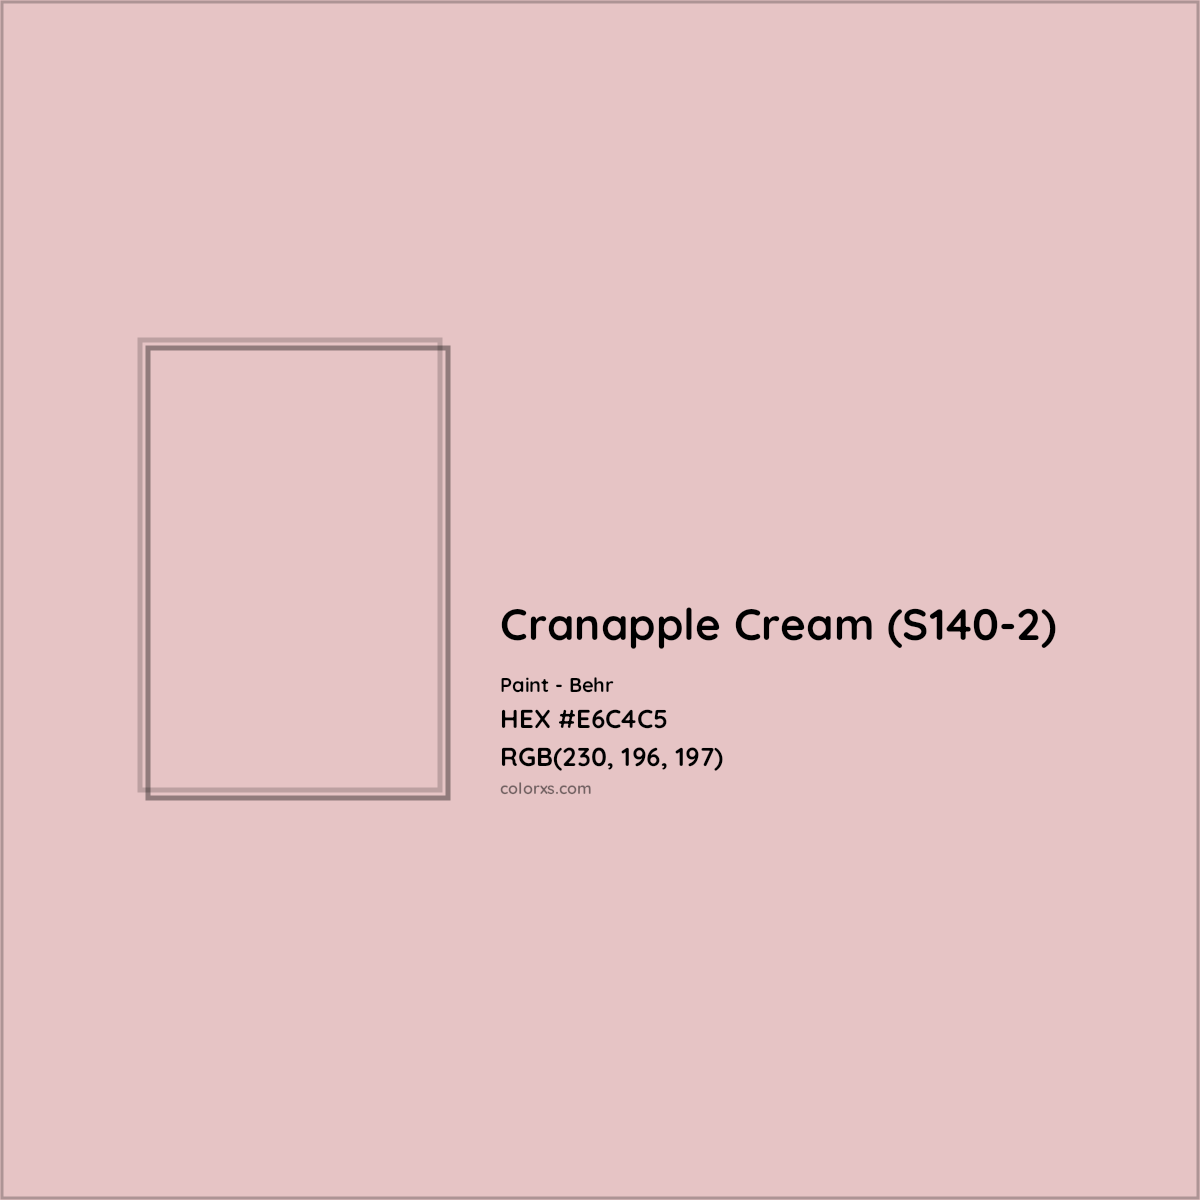 HEX #E6C4C5 Cranapple Cream (S140-2) Paint Behr - Color Code